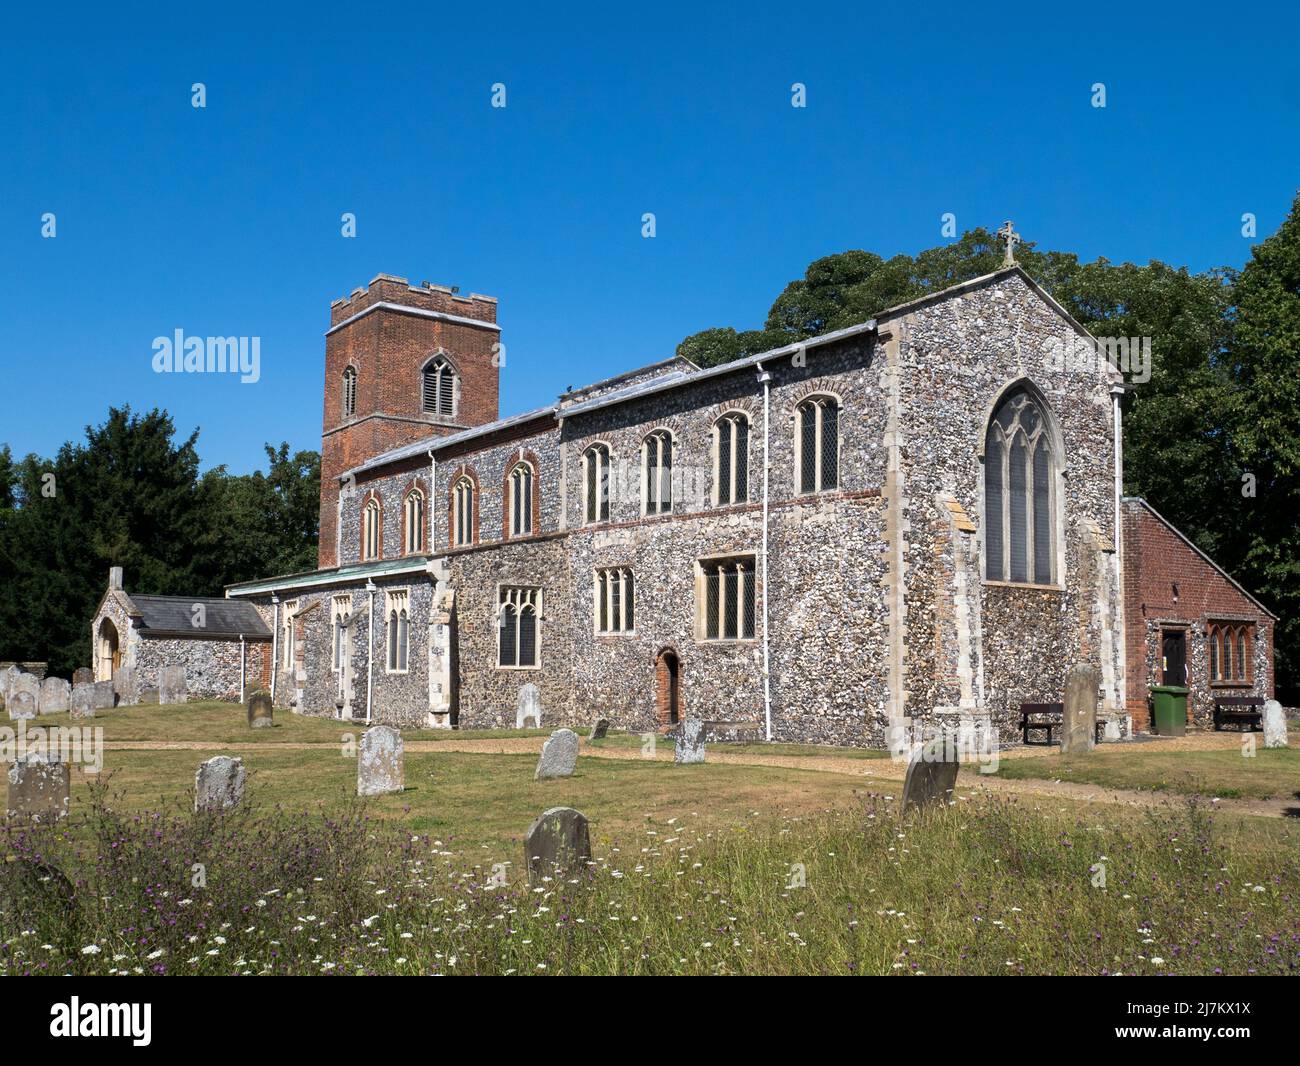 La chiesa parrocchiale di St Mary e St Margaret costruita principalmente in selce a Sprowston, risalente al 14th ° secolo, Sprowston, Norwich, Norfolk, Inghilterra, REGNO UNITO Foto Stock